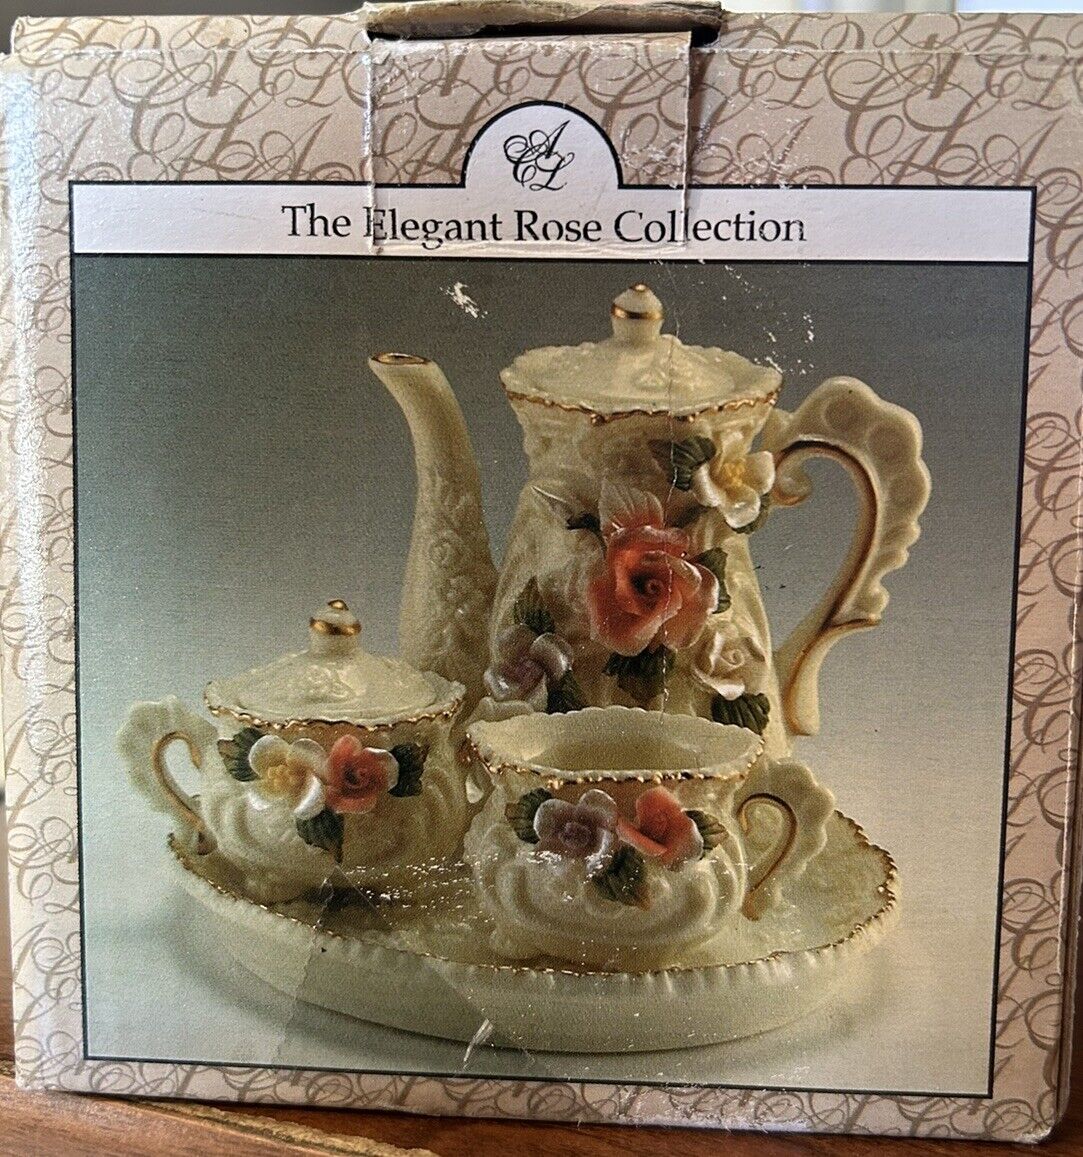 Miniature Tea Set Handmade Vintage Elegant Rose Collection Floral Gold Rimmed